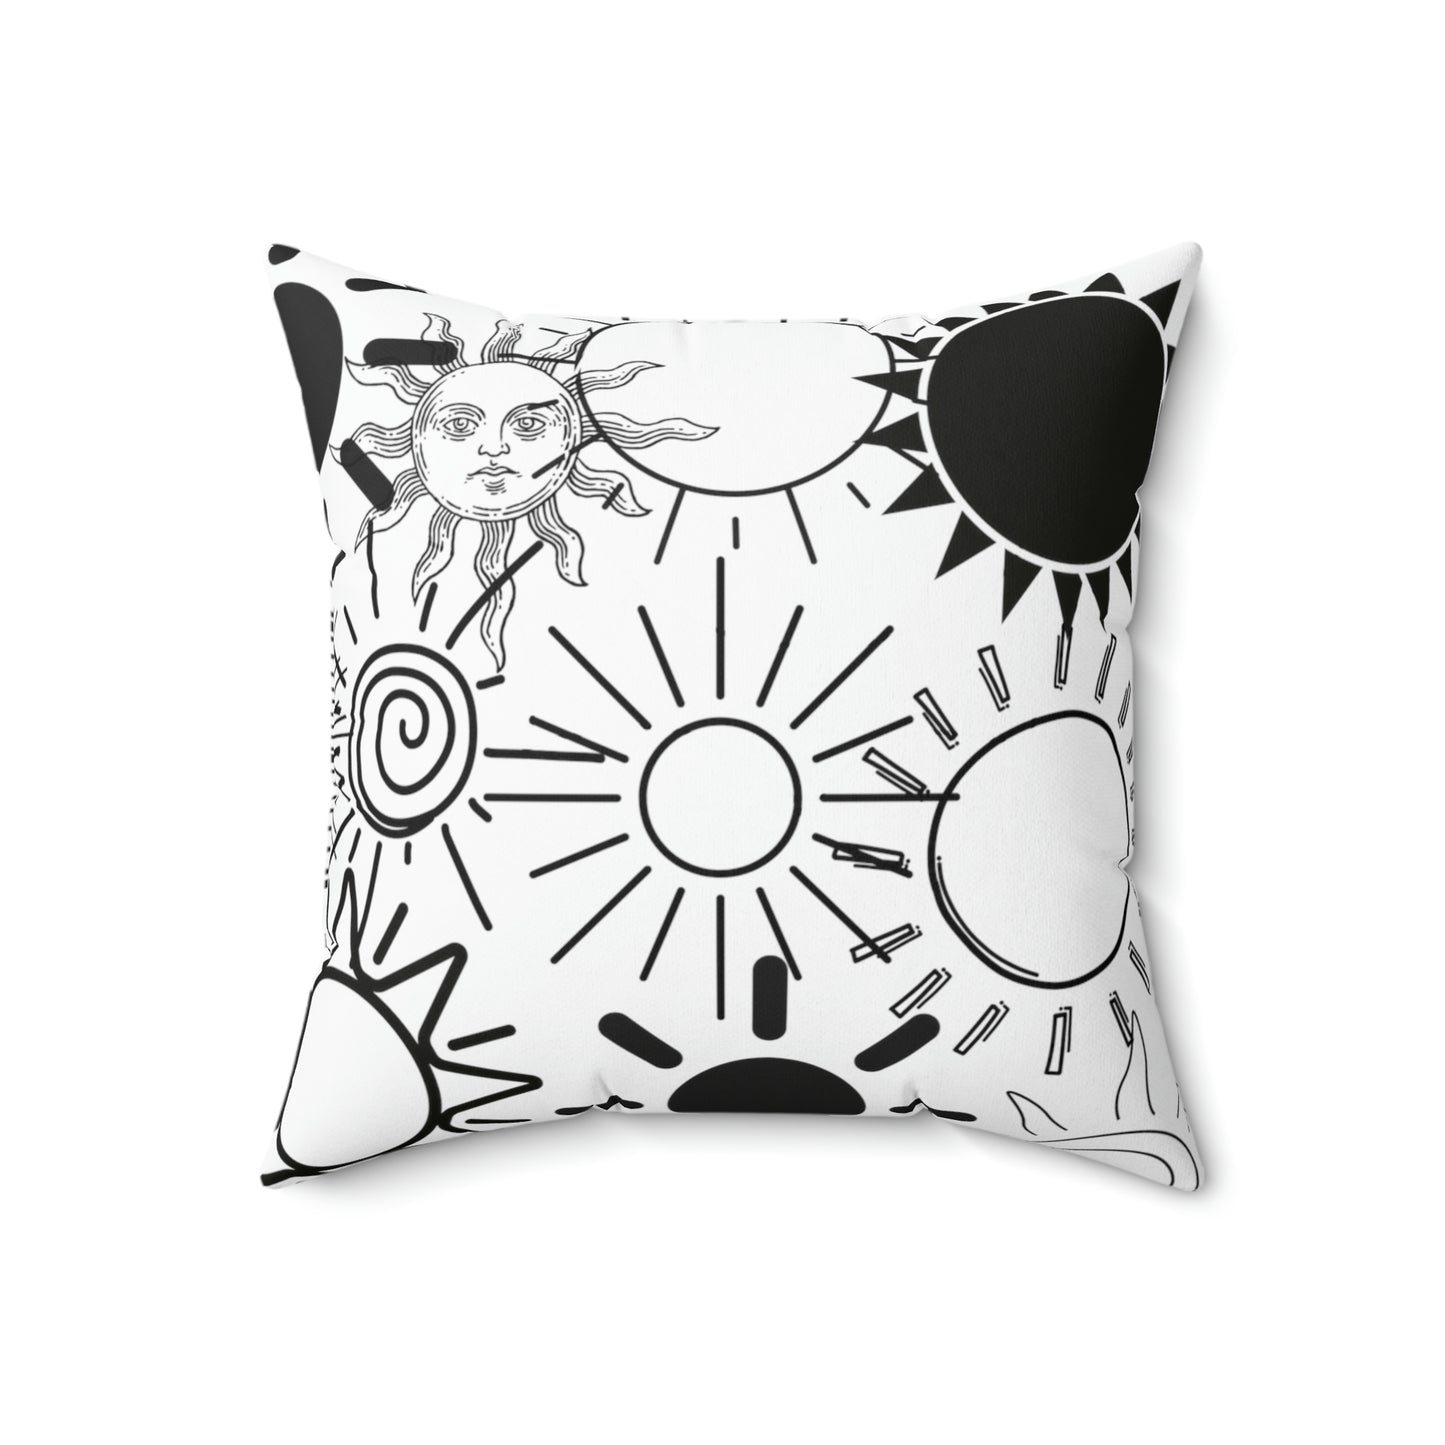 Sun pillow - Spun Polyester Square Pillow